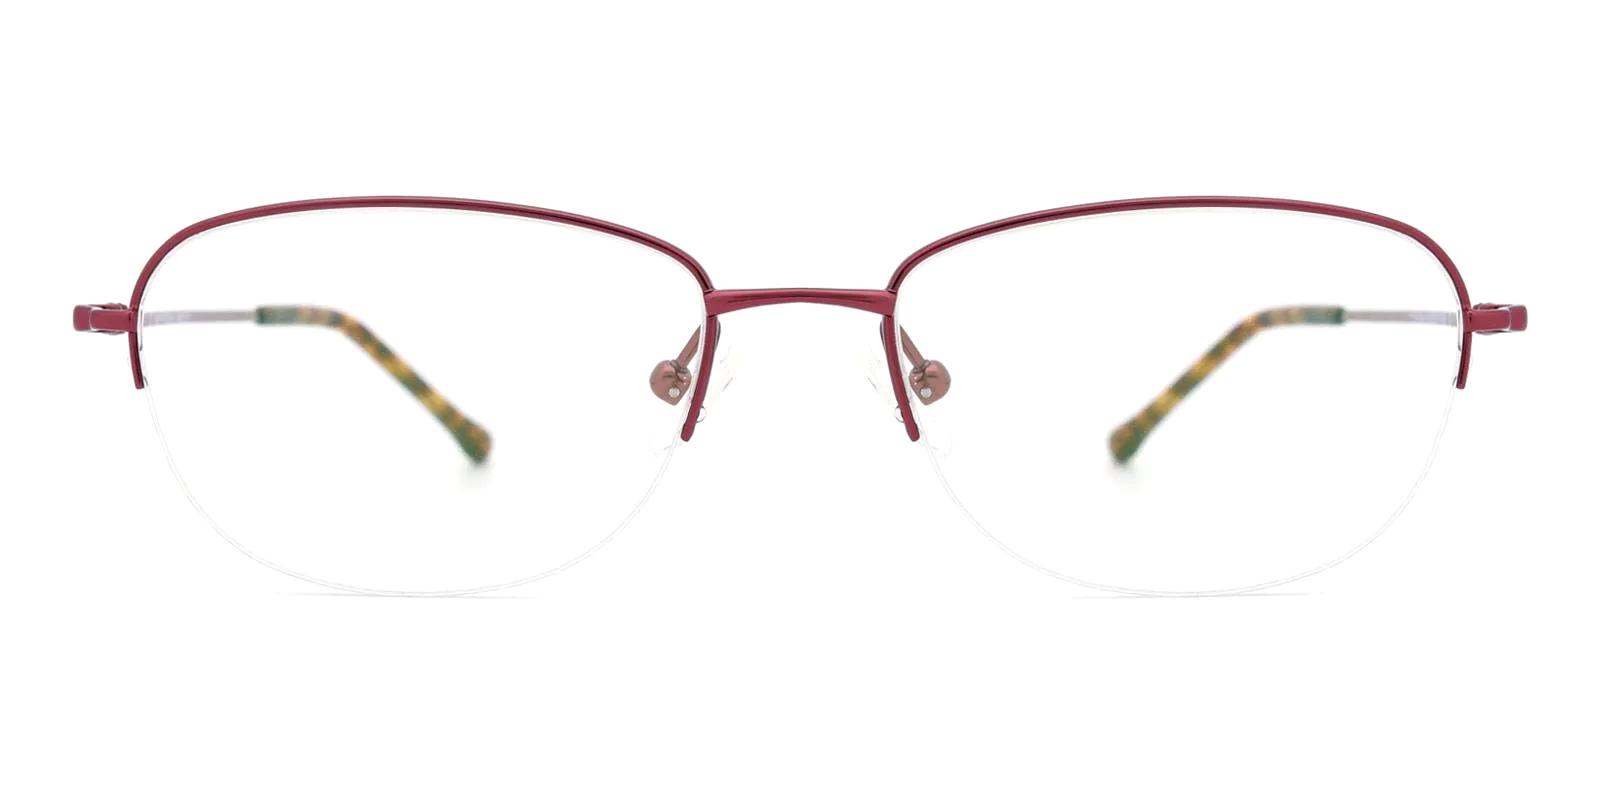 Legsive Red Titanium Eyeglasses , NosePads Frames from ABBE Glasses